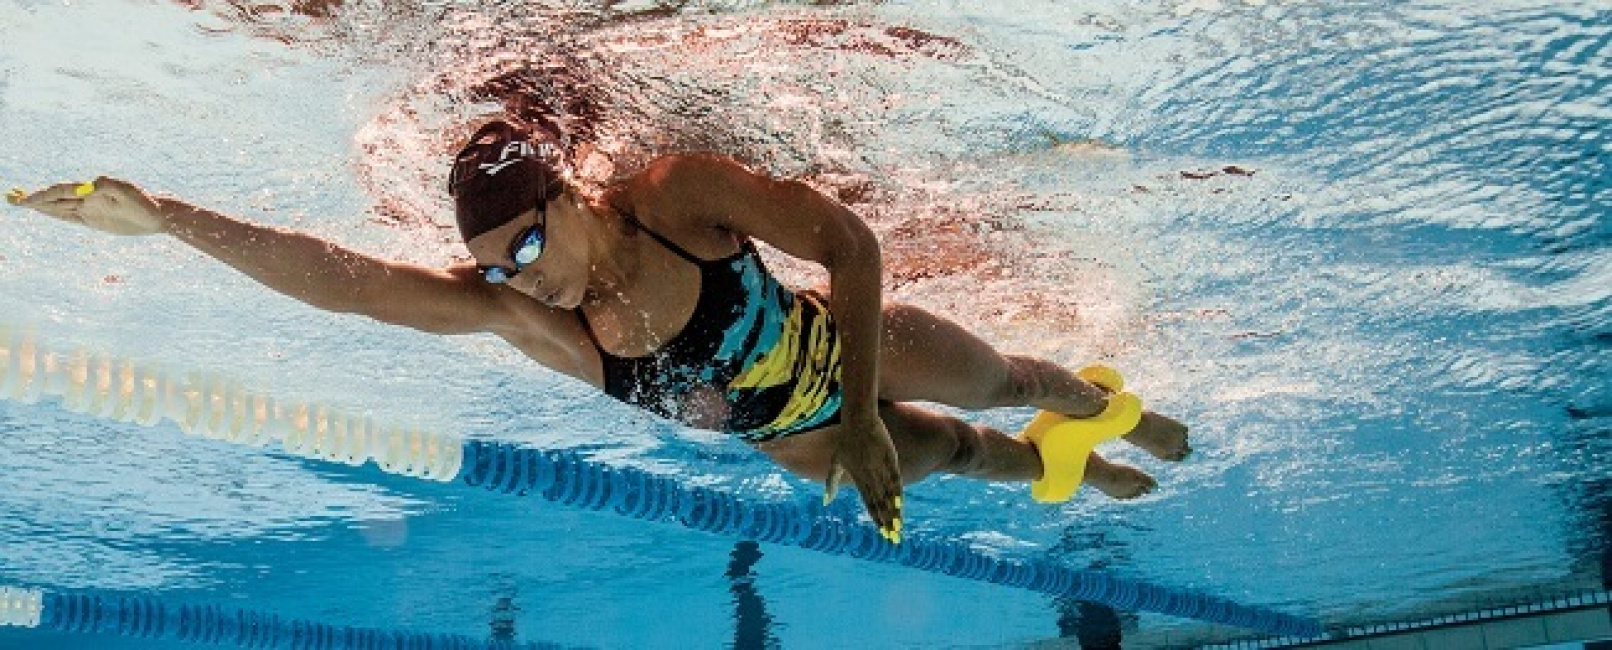 kiến thức bơi lội, 10 mẹo để cải thiện kỹ thuật bơi tự do của bạn